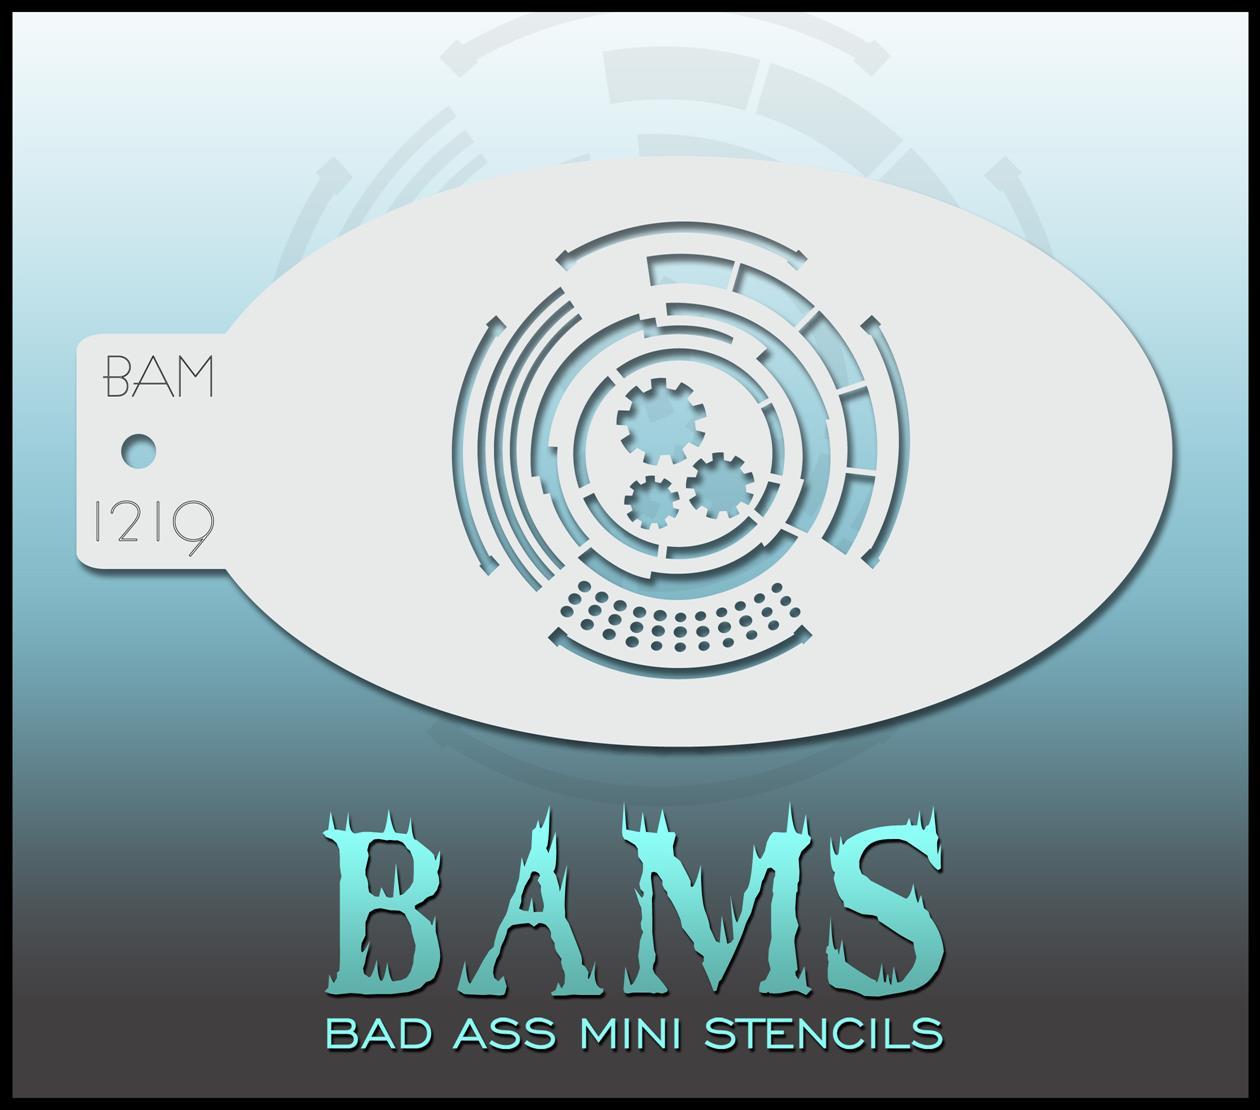 Bad Ass Stencils - BAM 1219 Circular Cyborg Cogs Robot